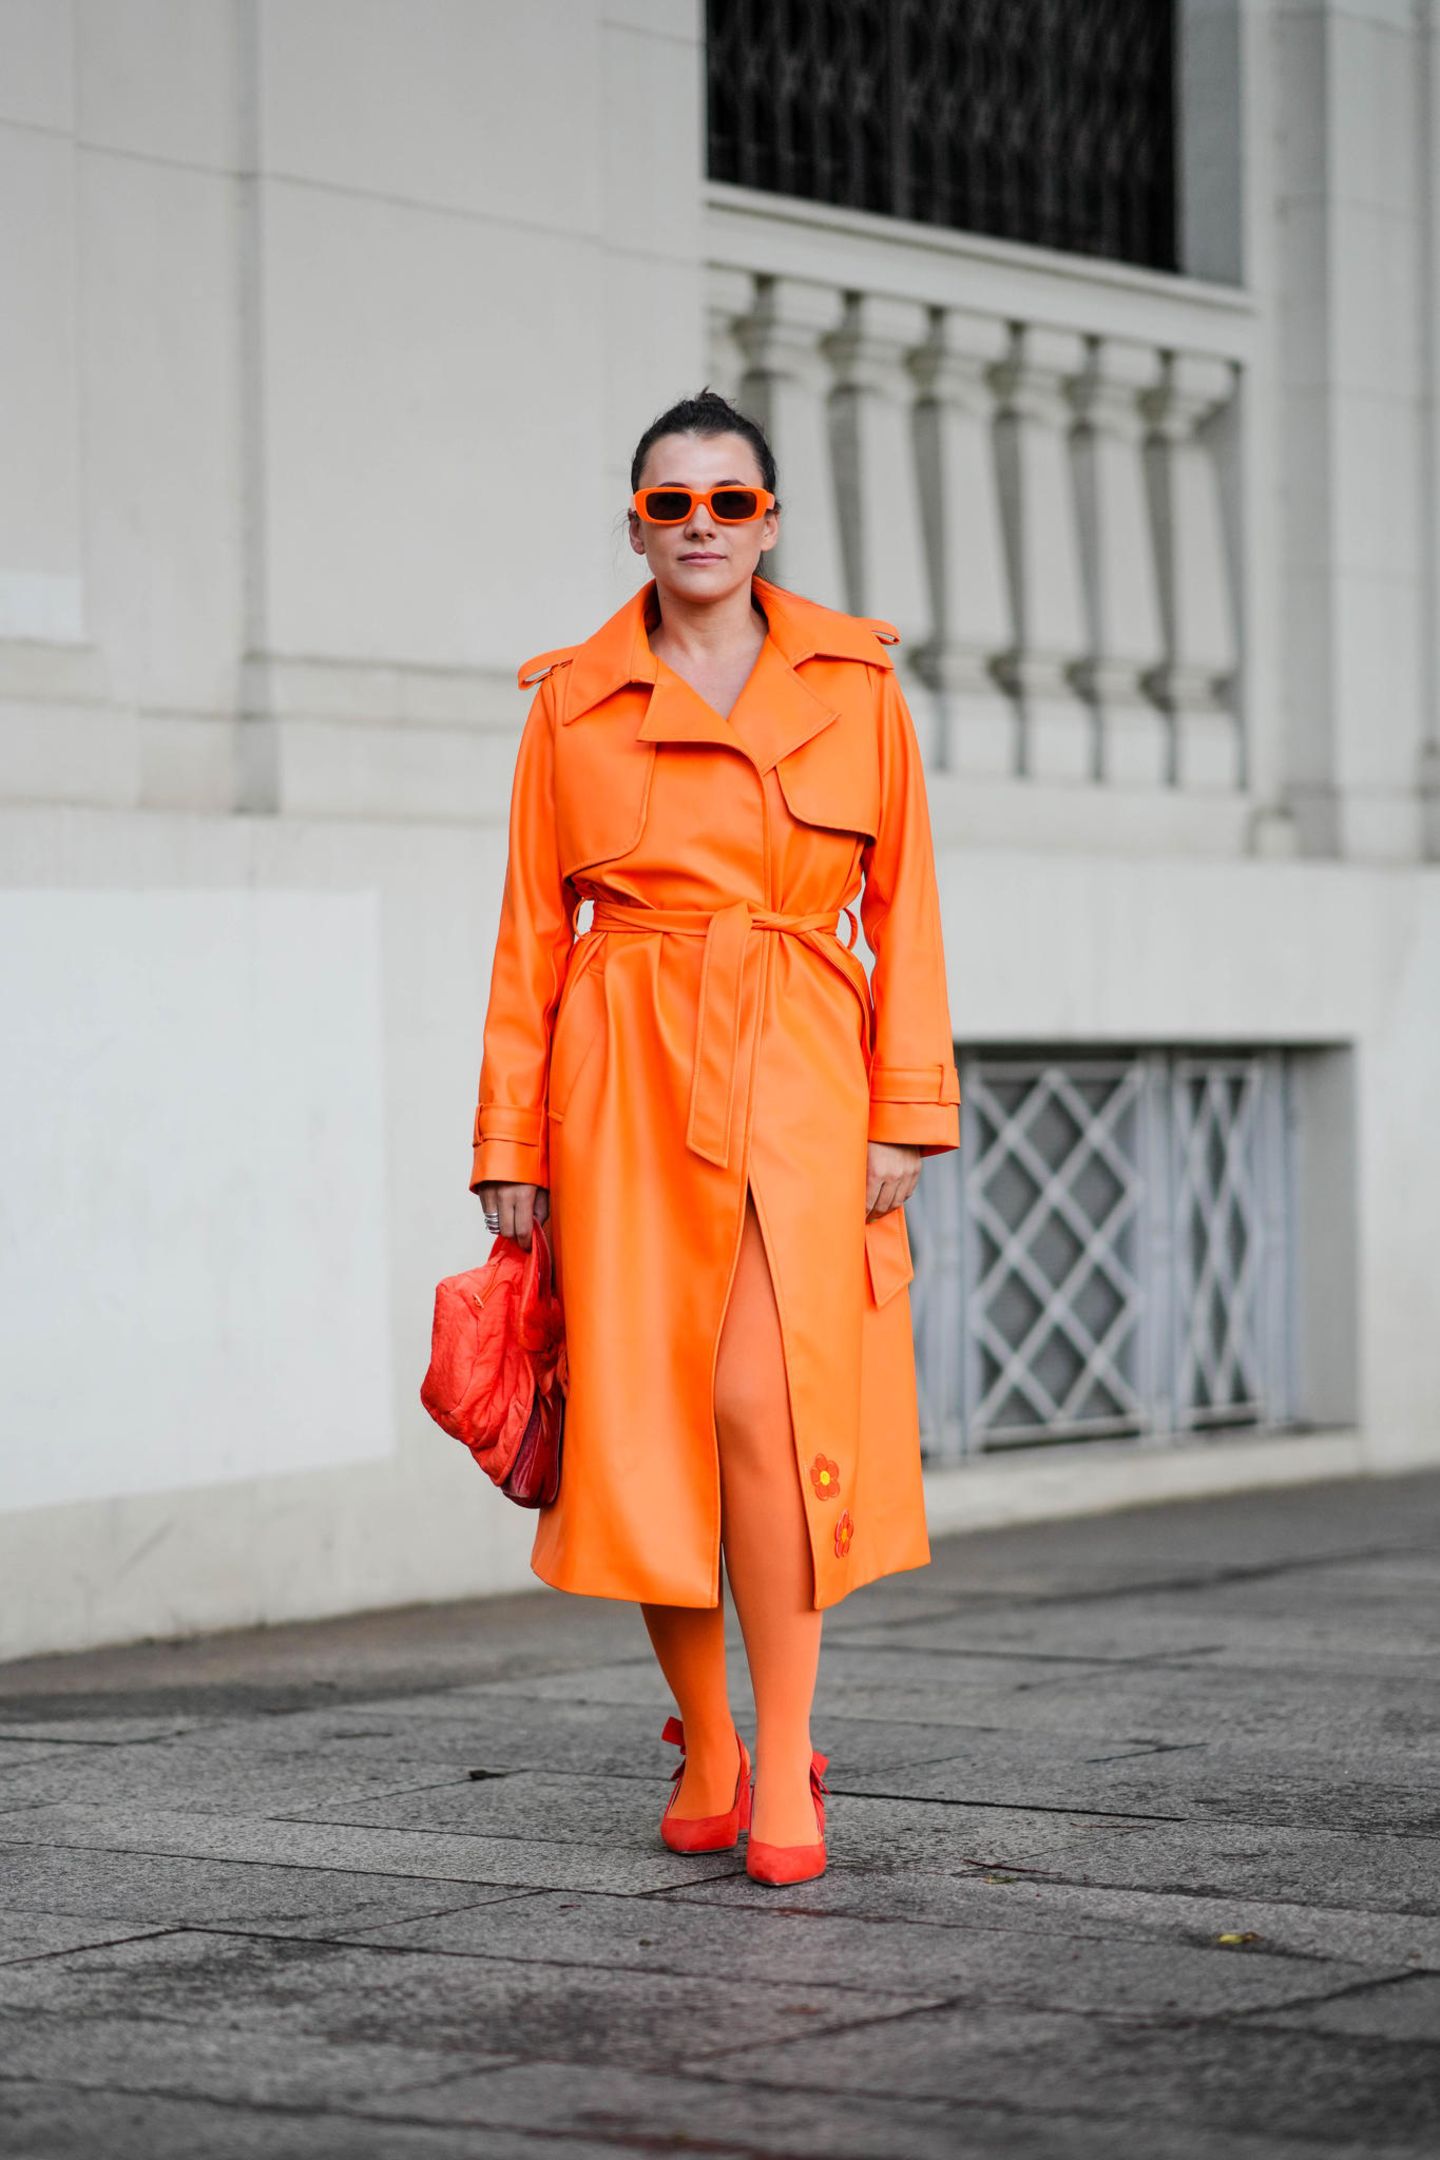 Auch Ton-in-Ton-Looks waren ein beliebter Trend in Mailand. Diese Besucherin hat sich für eine ganz mutige Kombi in strahlendem Orange entschieden.